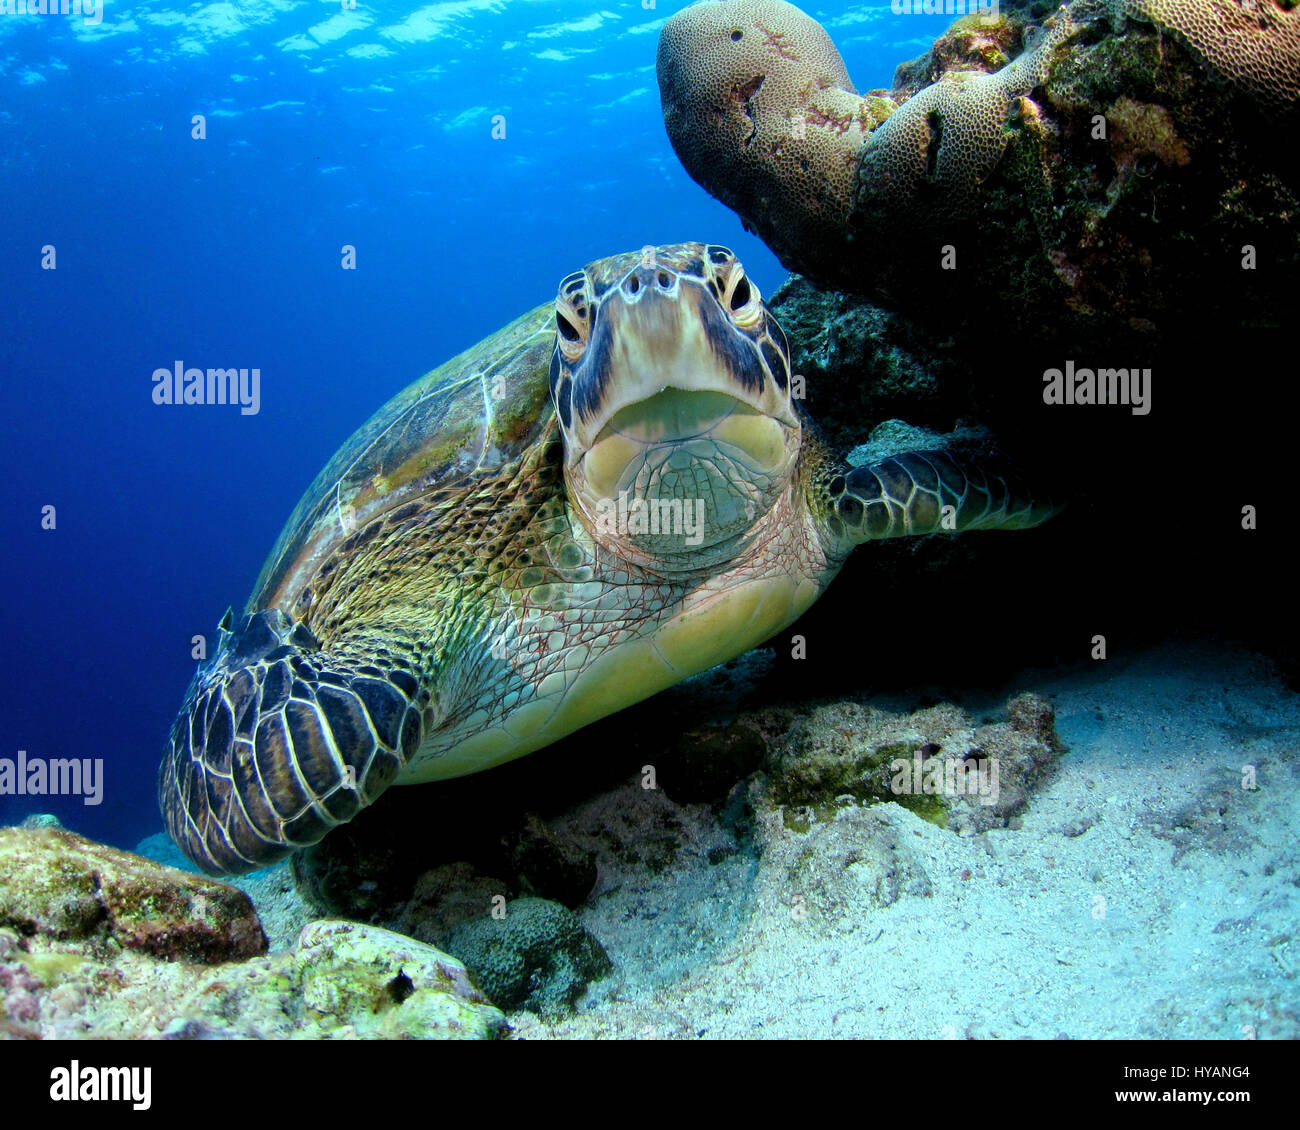 Malediven Unechte Karettschildkröte. WORLD Ocean Day 2015 wird durch diese bunte Sammlung von Unterwasser Lebewesen aus rund um den Globus gefeiert. Von neugierigen Karettschildkröten auf den Malediven zum größten Fisch der Welt, der mächtige 30-Tonne-Walhai diese Bilder sind eine Hommage an unseren Planeten vielfältig – aber zerbrechlich – Ozeane. Gefeiert wird von Naturliebhaber auf unserem Planeten World Ocean Day findet am 8. Juni sieht in diesem Jahr Hunderte von Veranstaltungen, Vorträgen und Ausstellungen weltweit, darunter 12 Veranstaltungen im Vereinigten Königreich allein. Marine Fotograf Super Jolly (37) erklärt, warum sie d Stockfoto